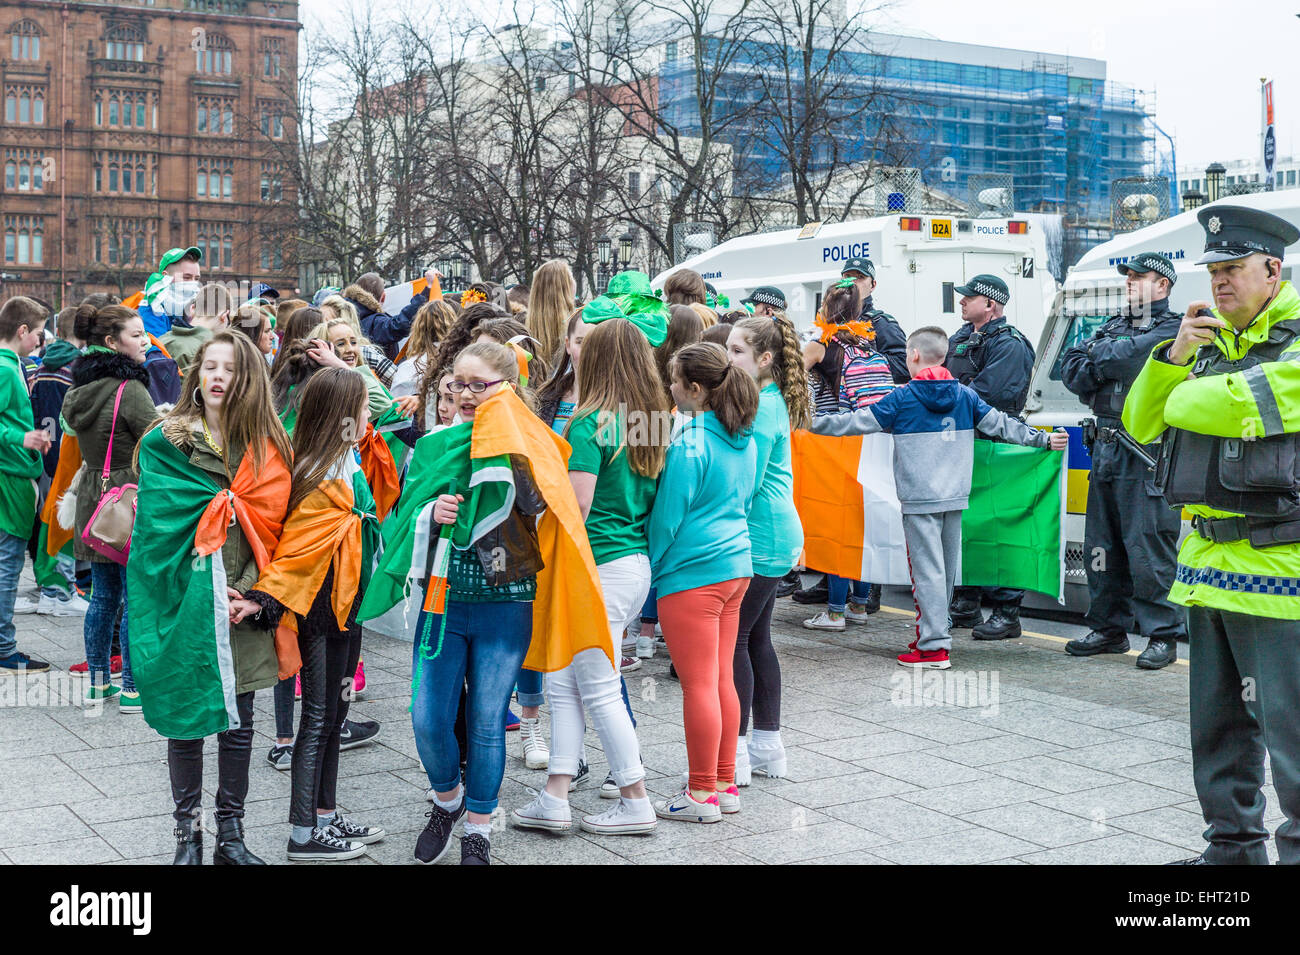 Gruppi rivali repubblicani drappeggiati in irlandese Tricolors e sindacalisti sventolando bandiere Unione affacciate nella parte anteriore del Municipio. Foto Stock